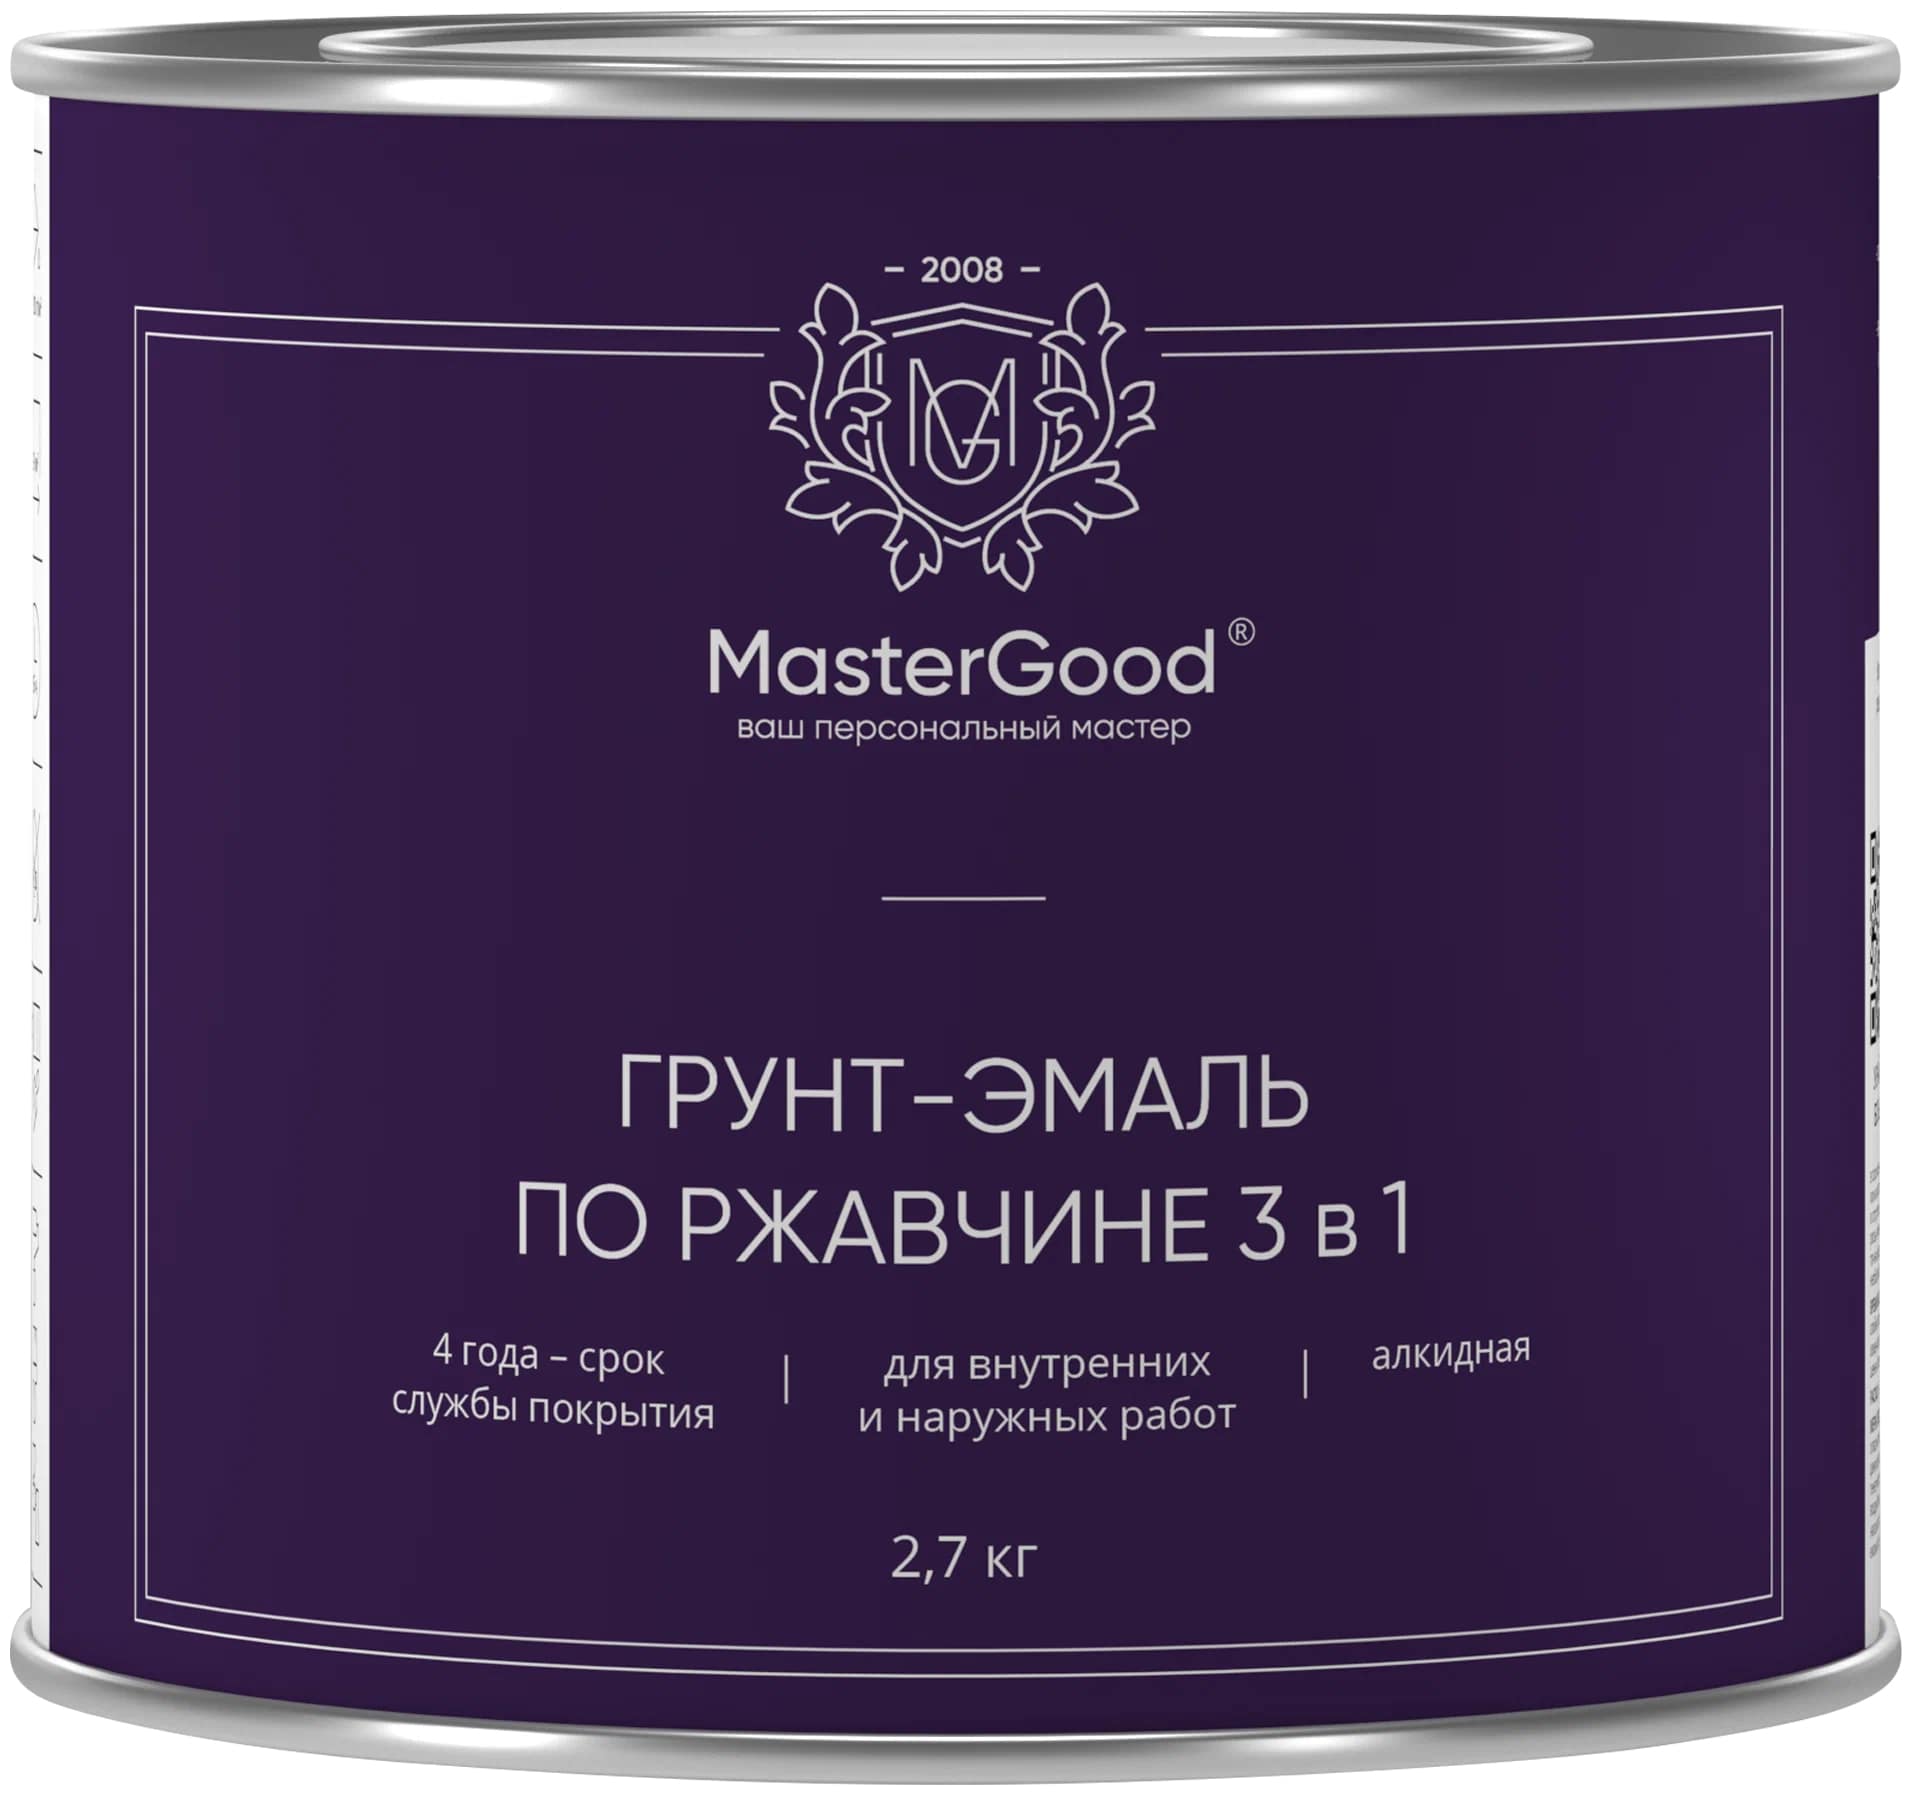 Грунт-эмаль Master Good по ржавчине, 3 в 1, синий, 2,7 кг